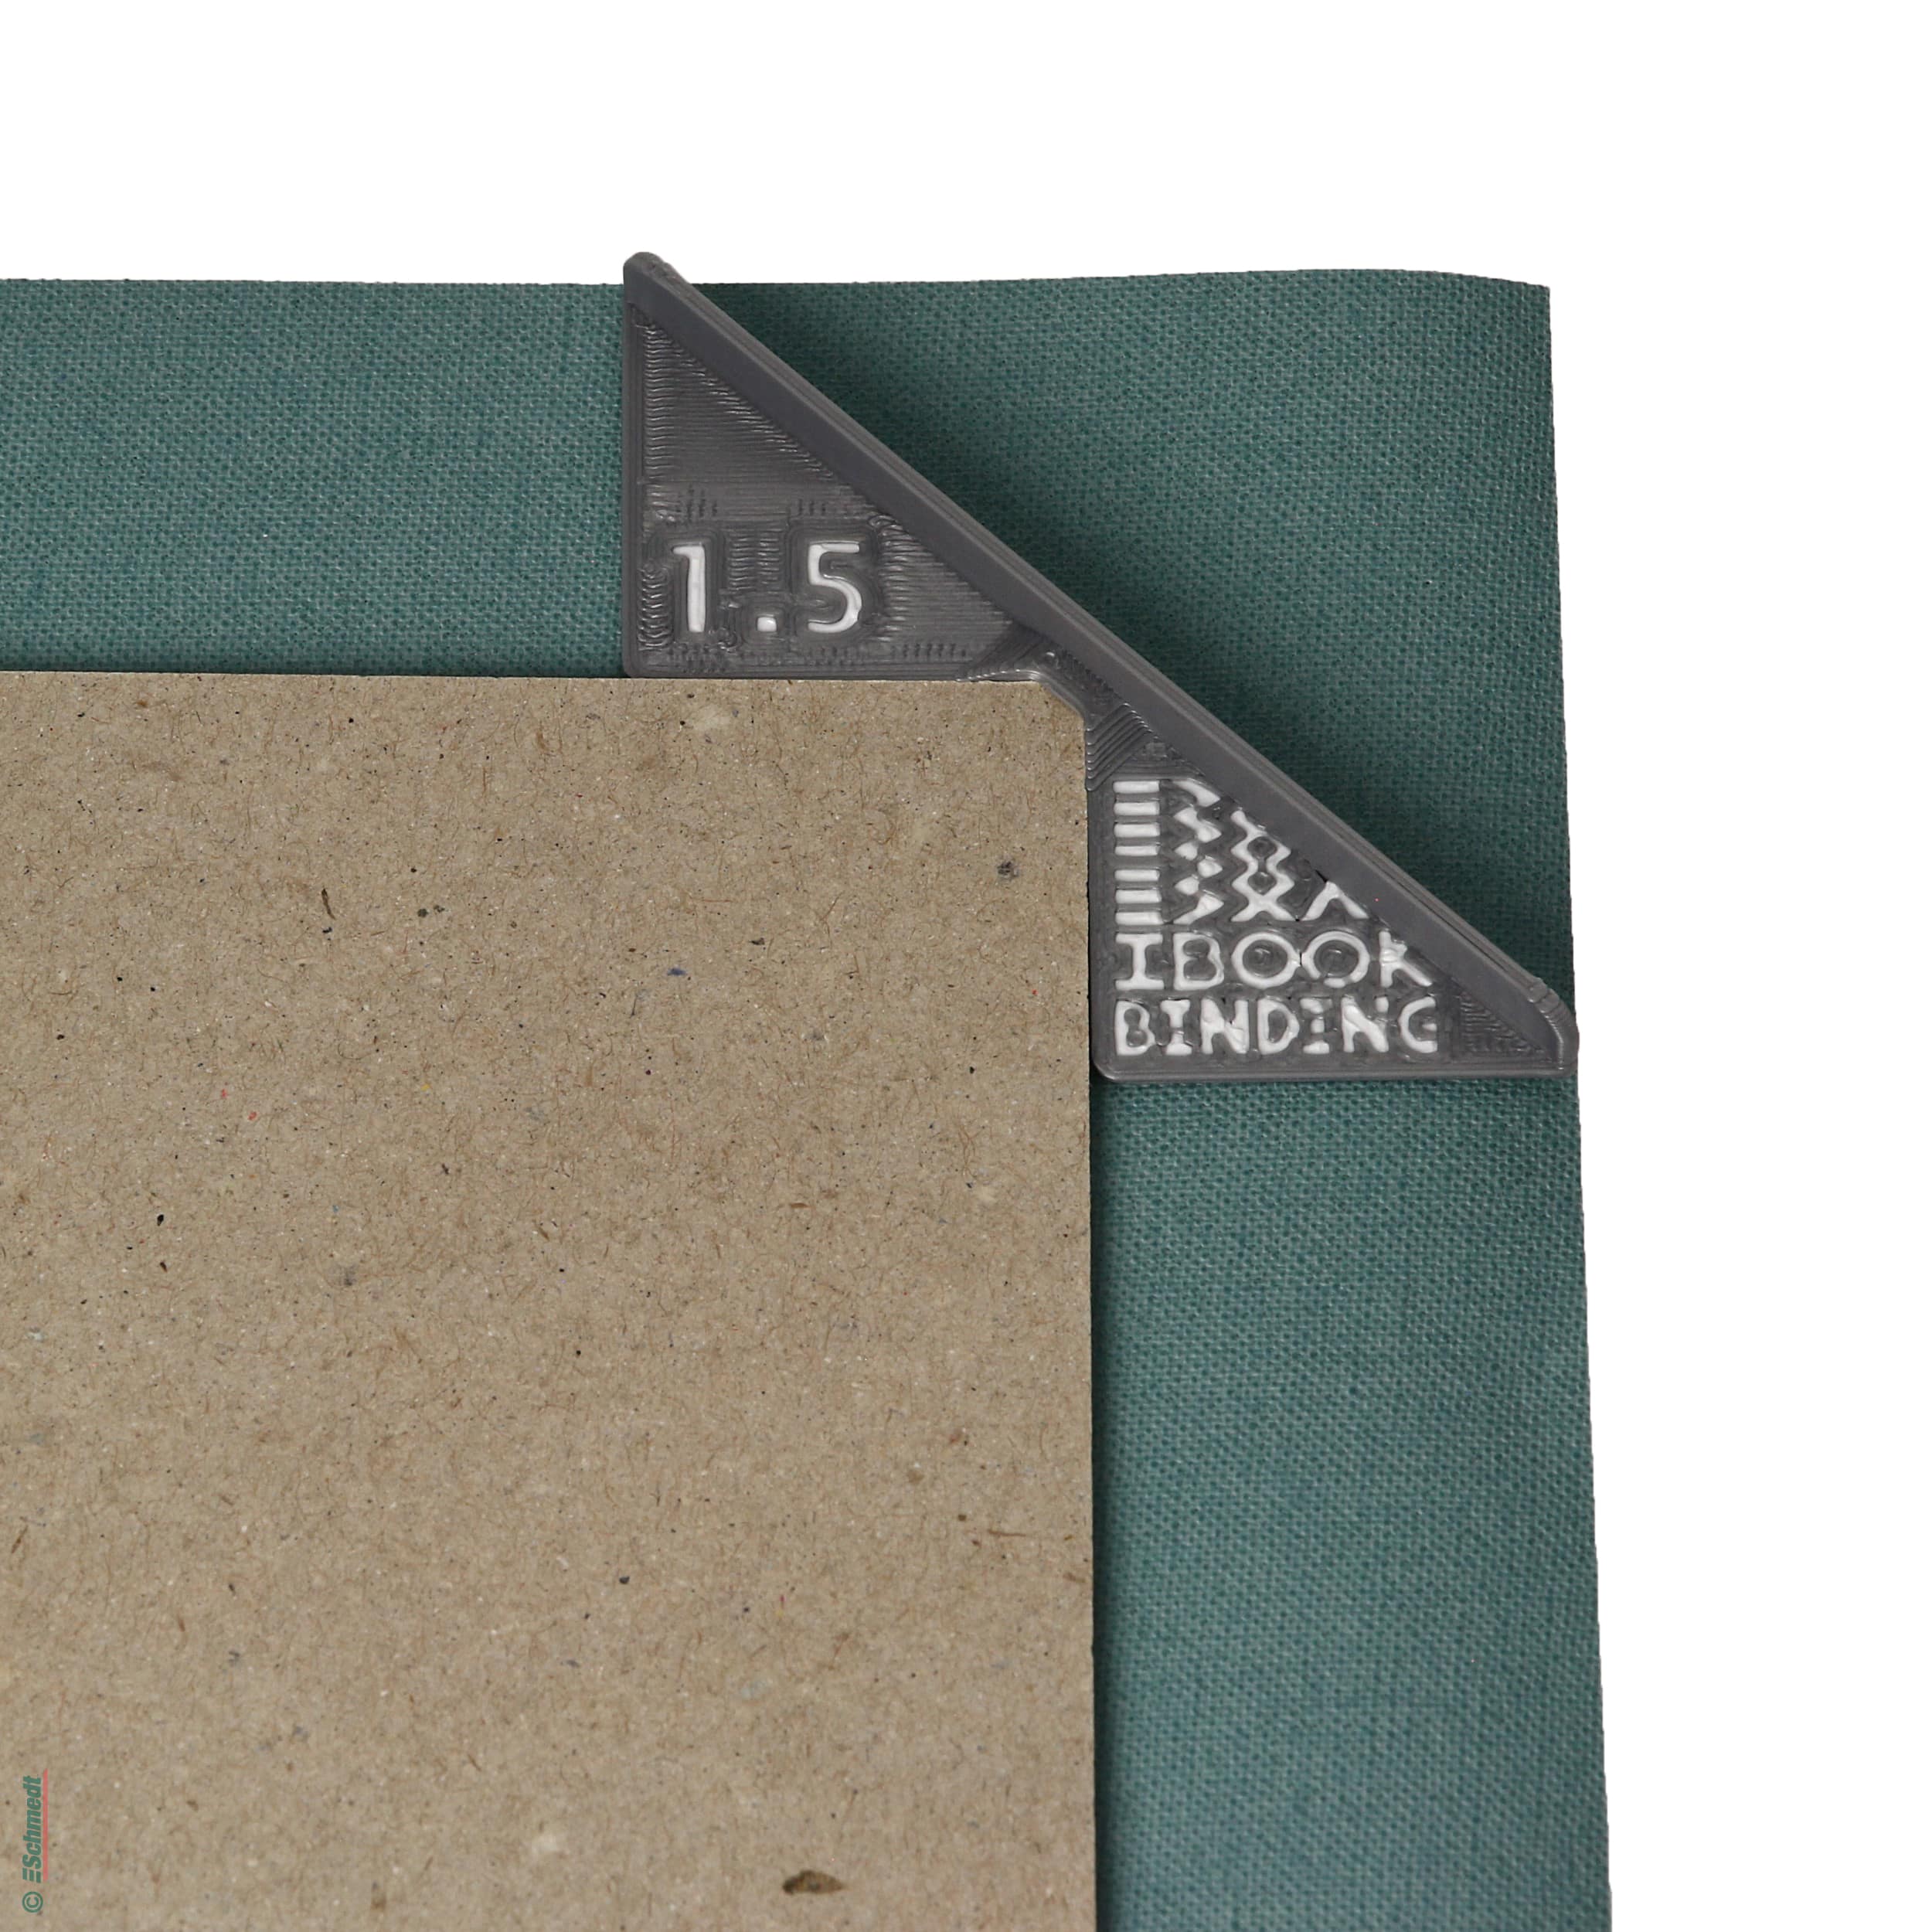 Eckenschneidevorrichtung - für die Buchdeckenherstellung - Praktisches Hilfsmittel, das ermöglicht, die Ecke des eingeschlagenen Überzugsmat...